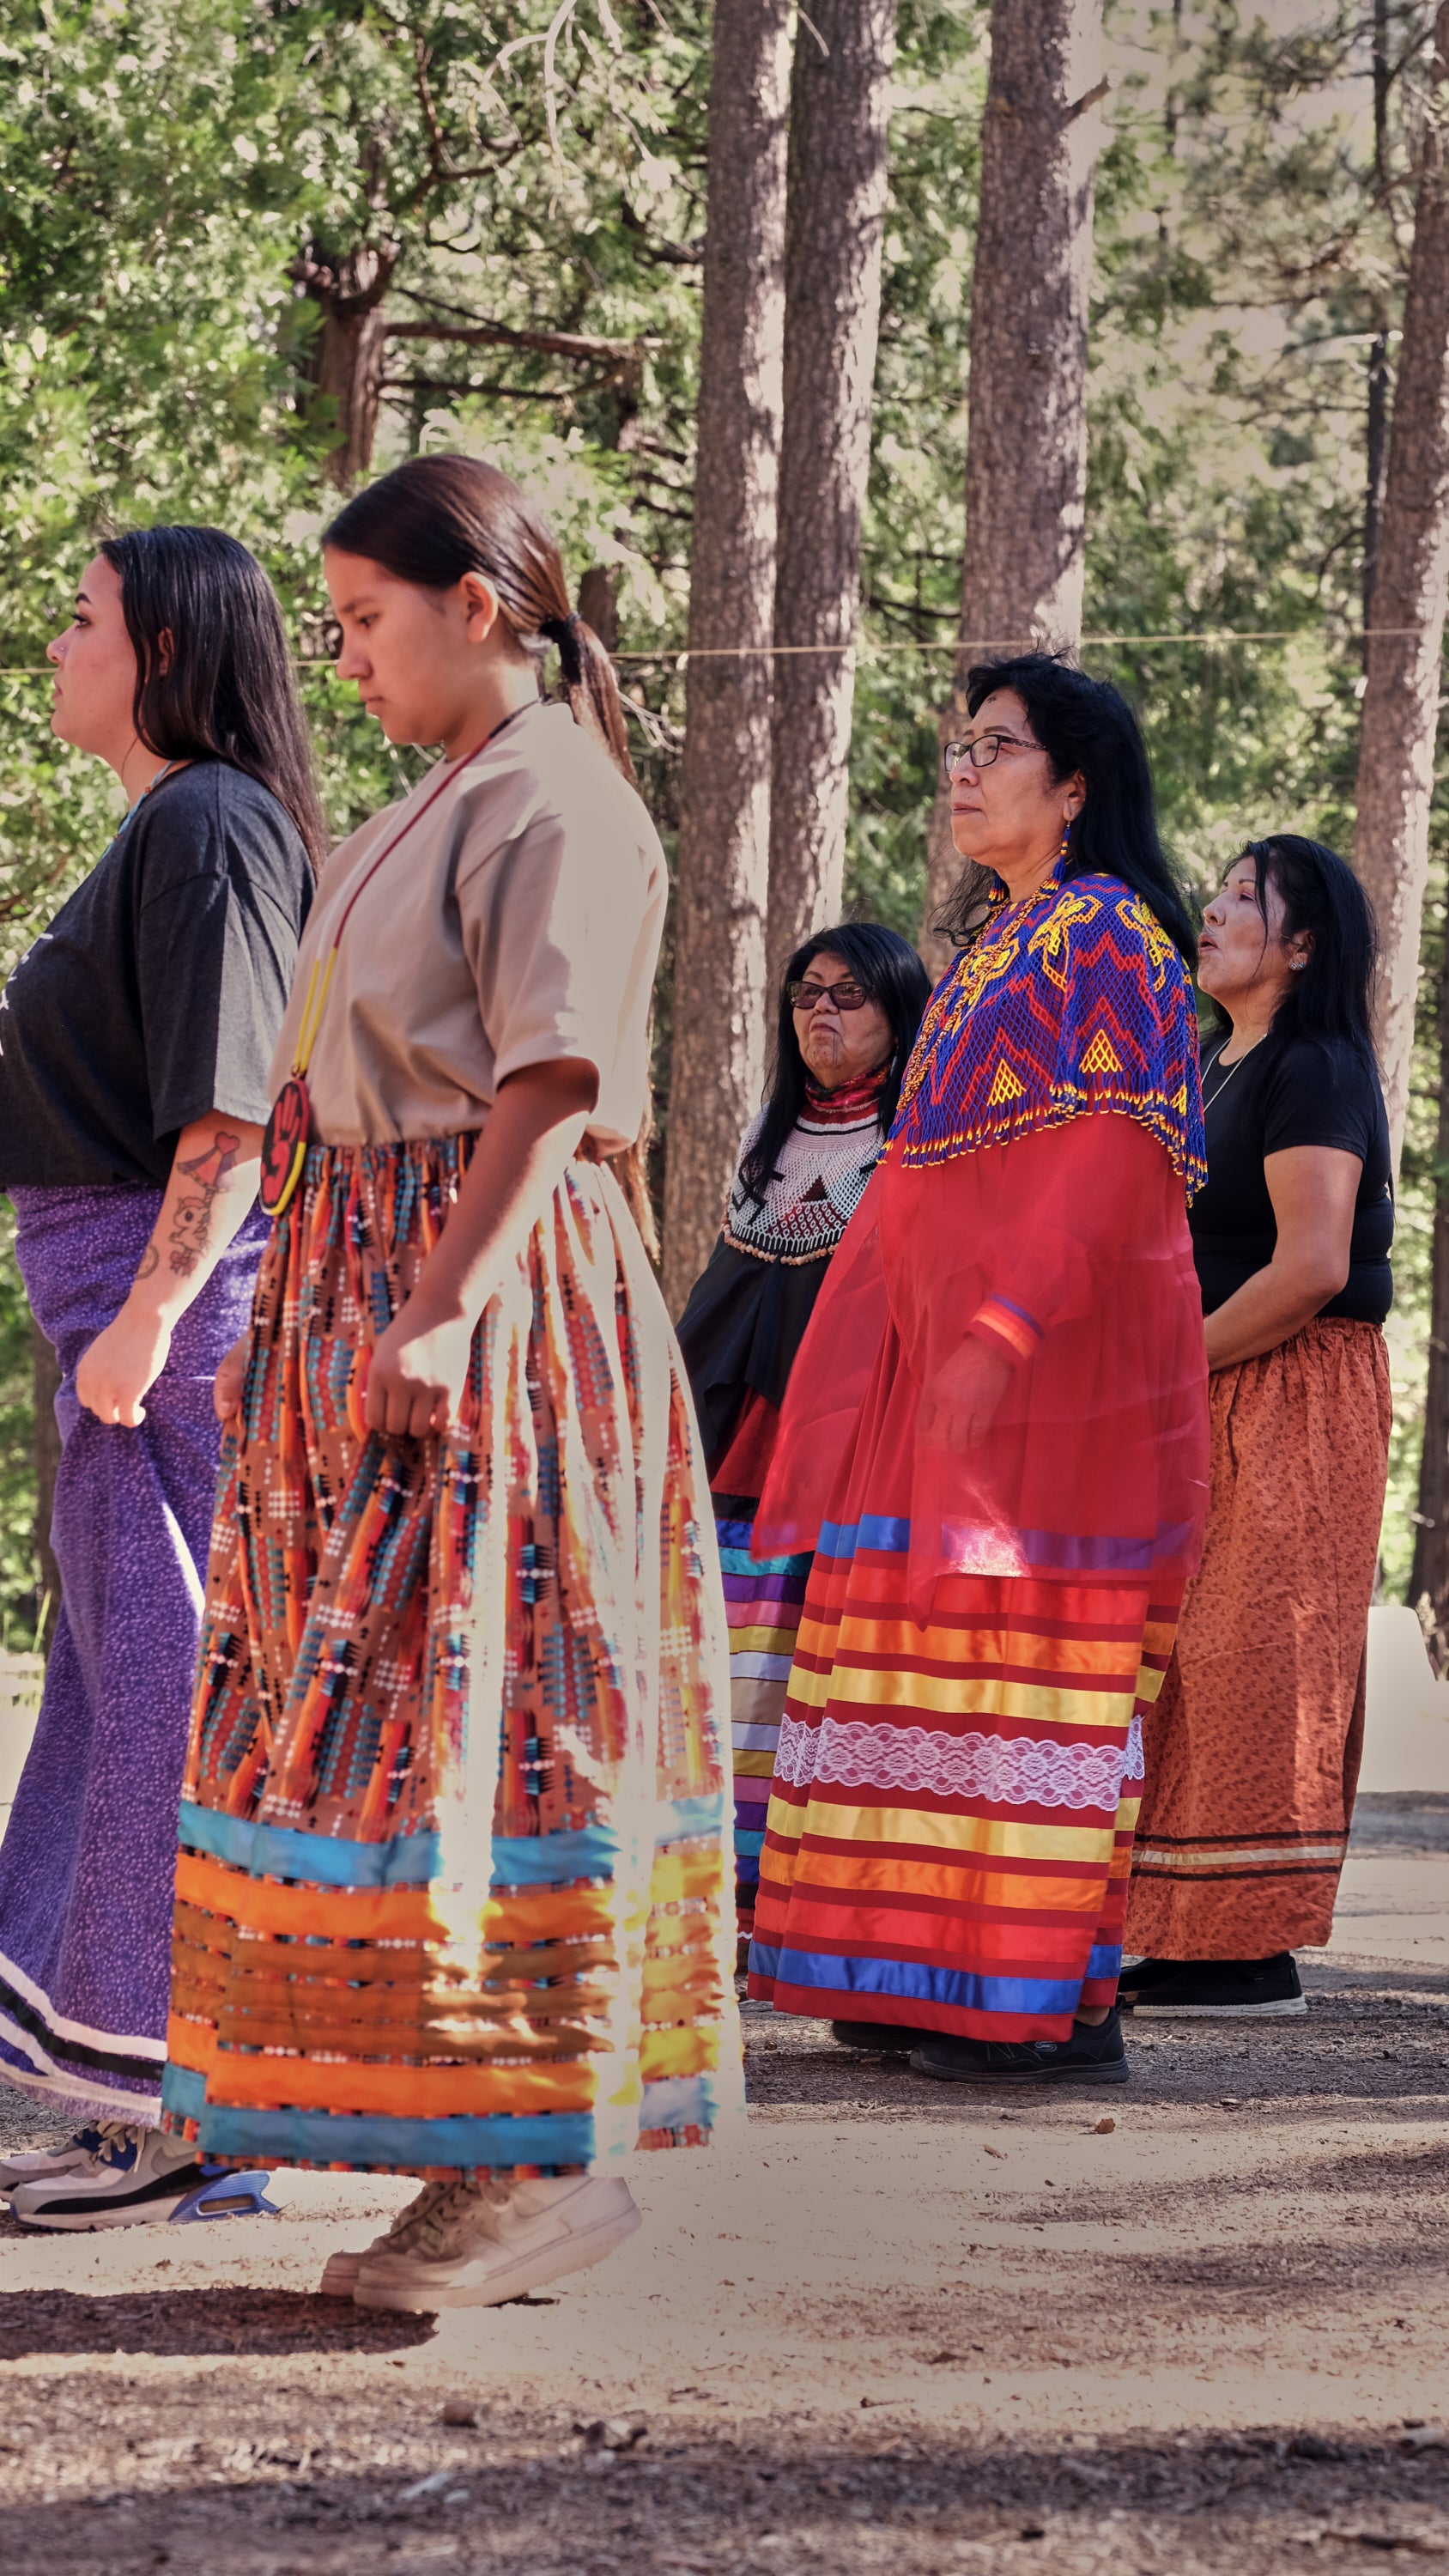  The Cahuilla Culture 